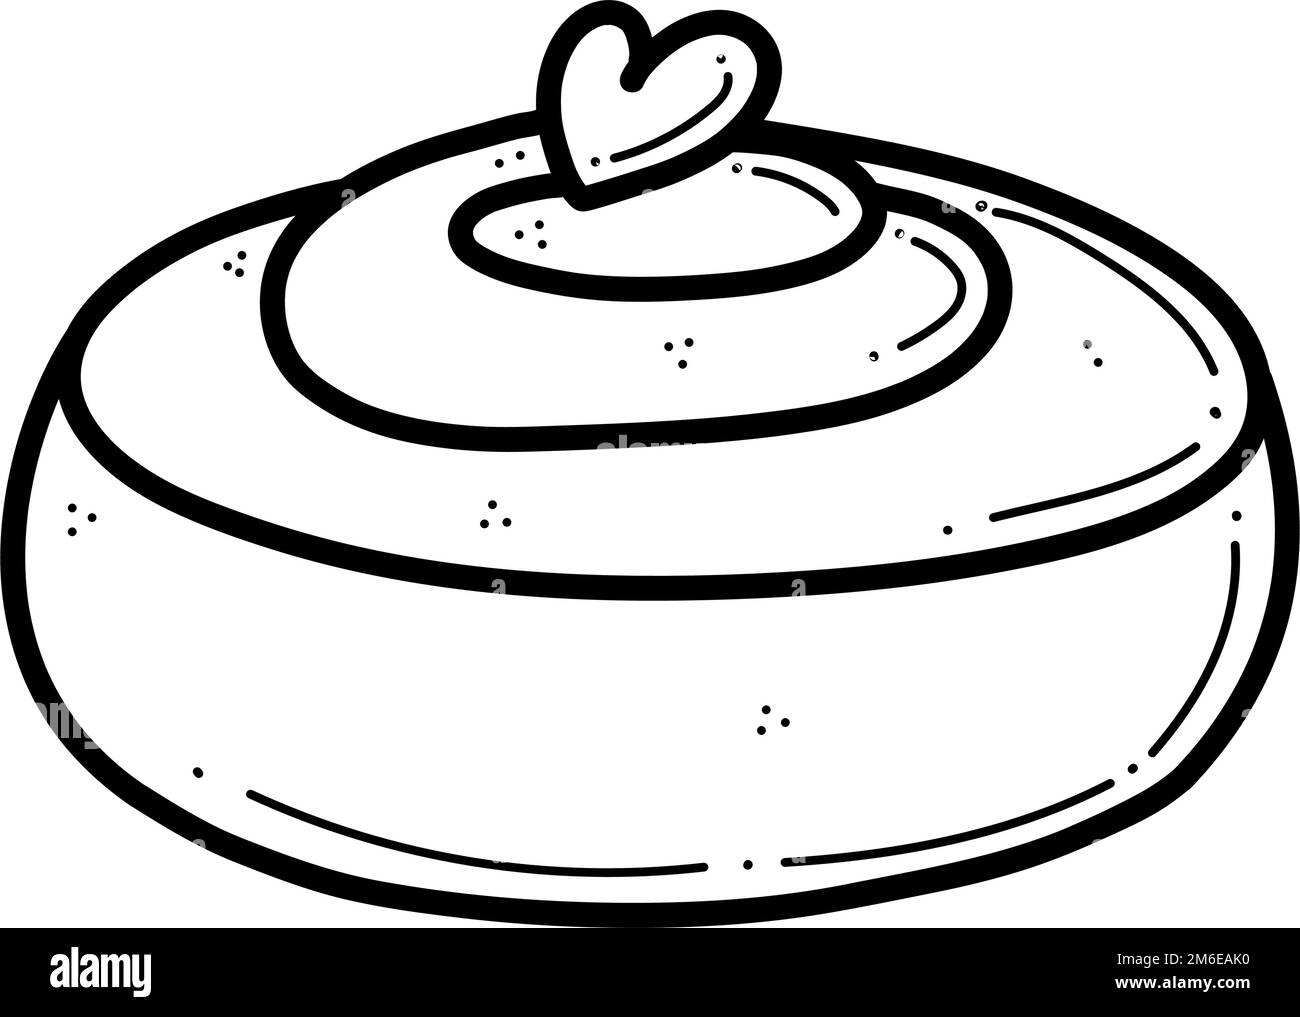 Illustrazione vettoriale disegnata a mano del rotolo di cannella. Pasta di pasta per pasticceria per il design di panetteria, menu e decor del cafe' Illustrazione Vettoriale